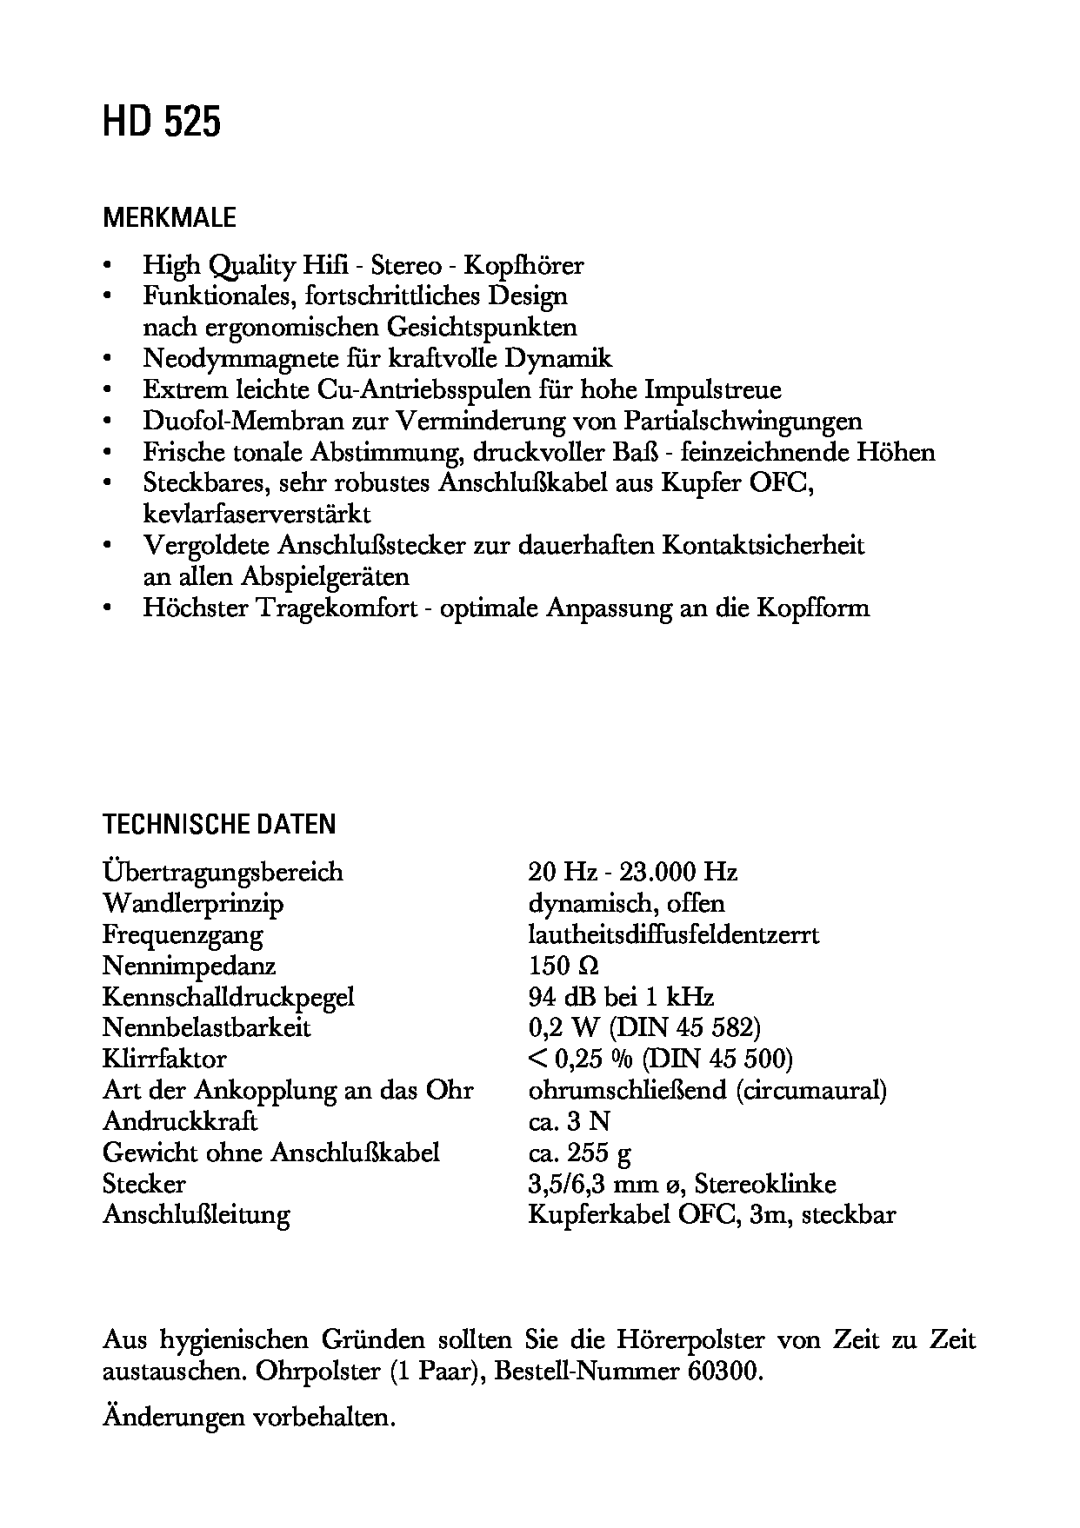 Sennheiser HD525 manual Merkmale, Technische Daten 